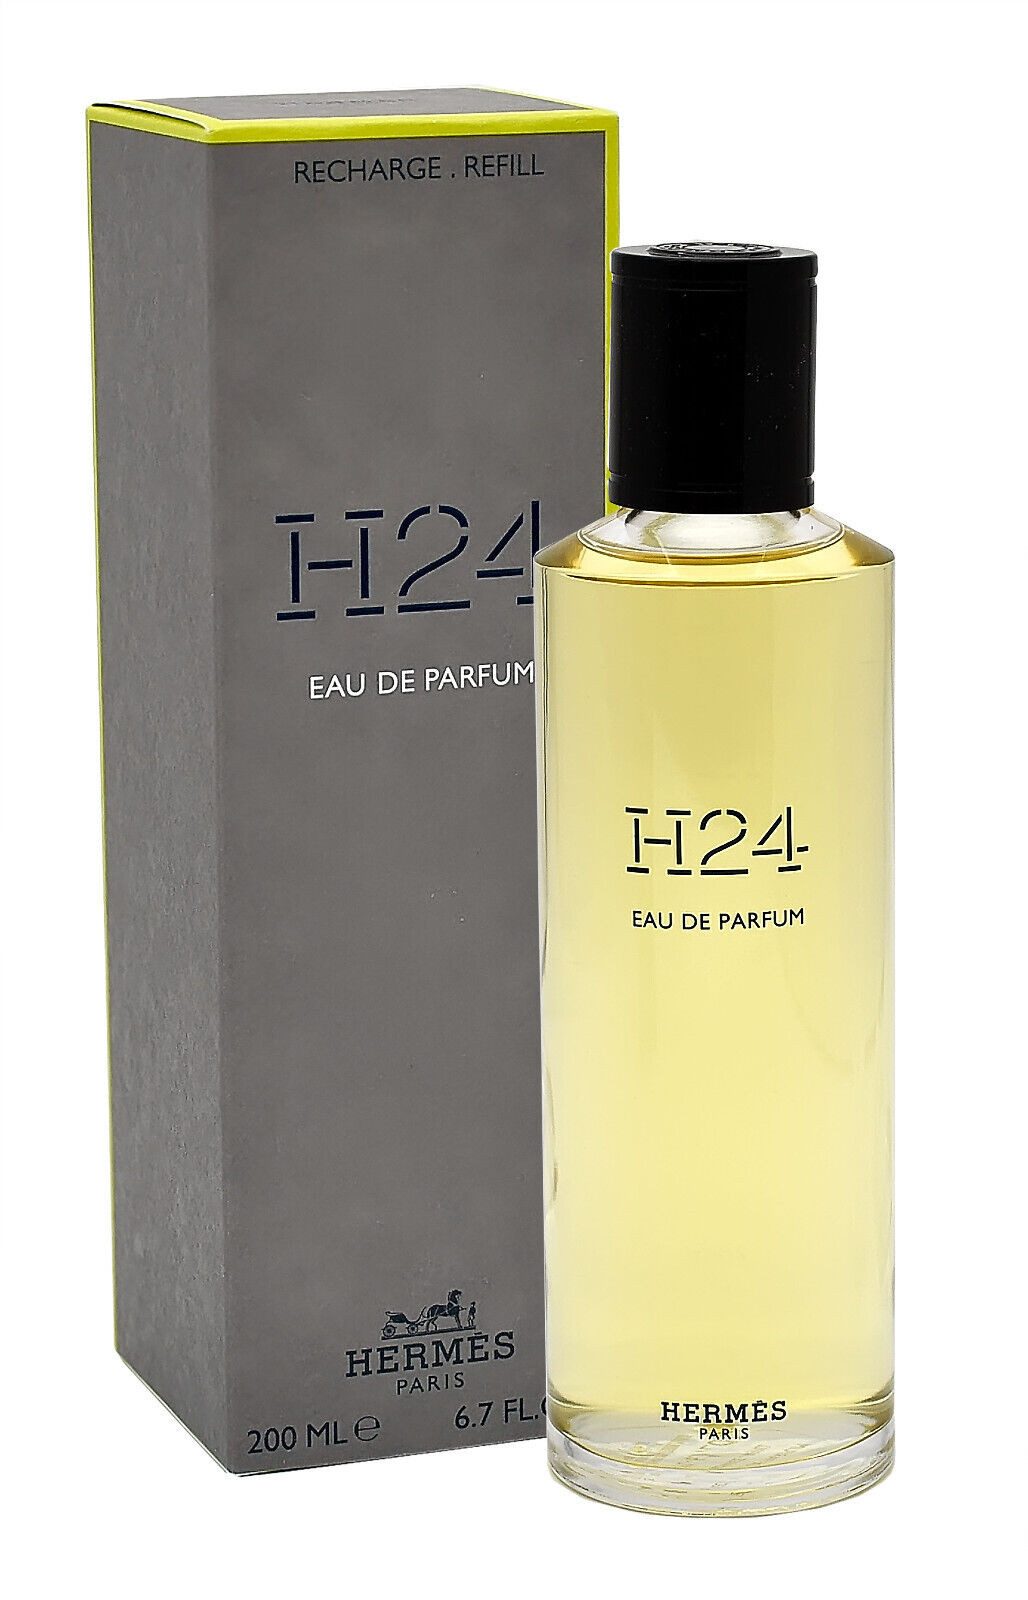 HERMÈS Eau de Parfum HERMES H24 EAU DE PARFUM REFILL 200 ML